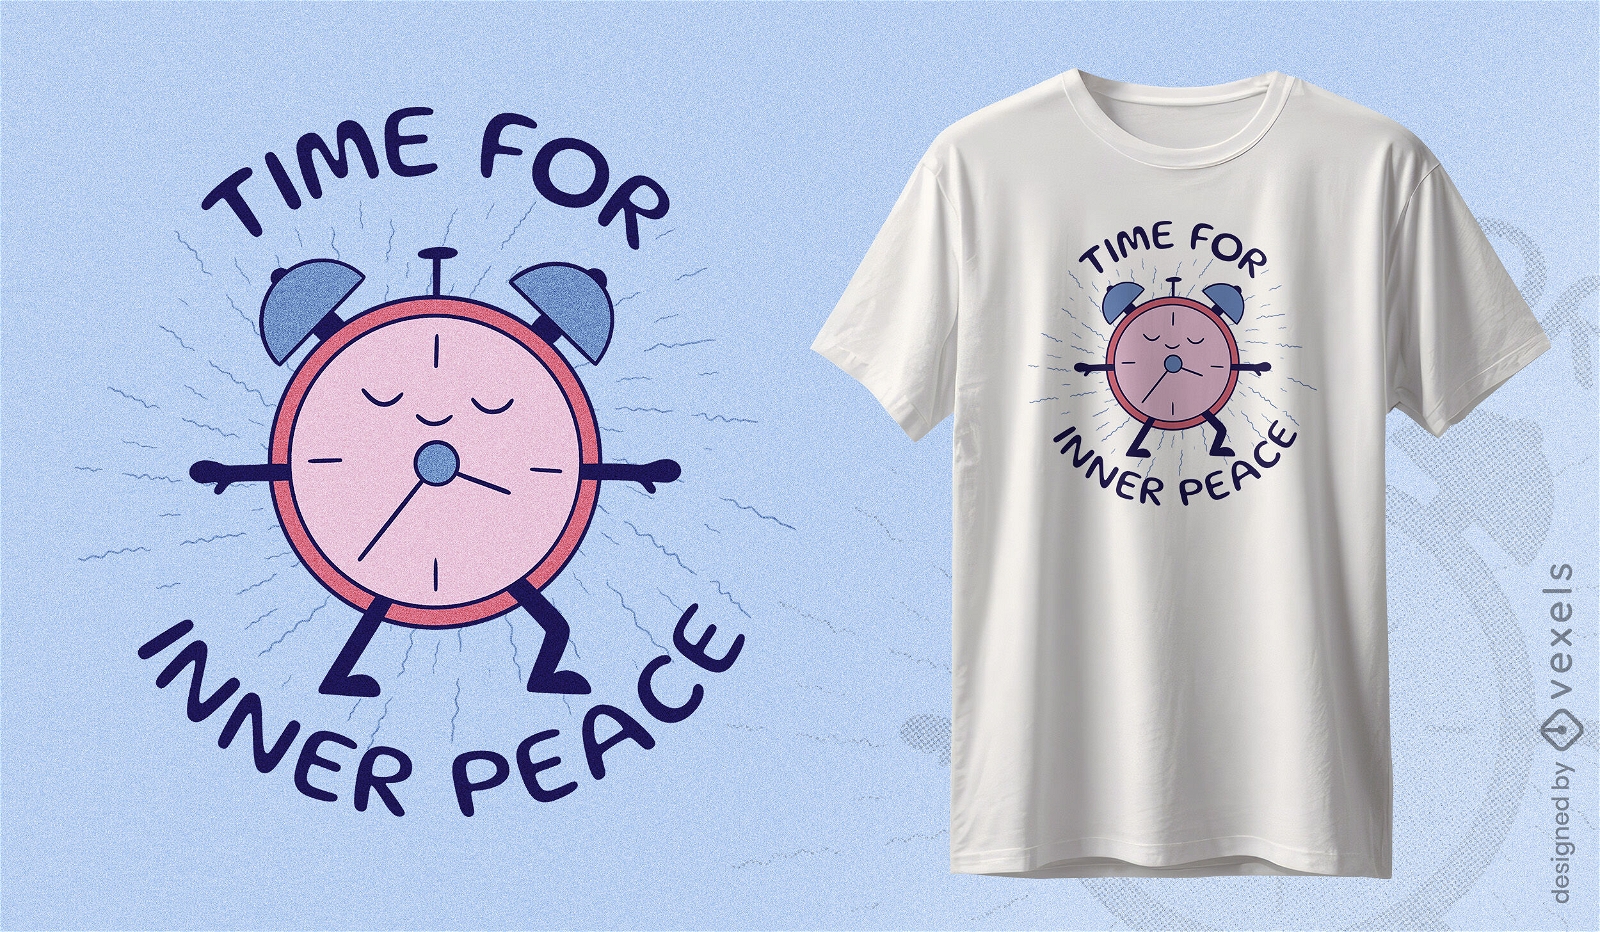 Time for inner peace clock t-shirt design